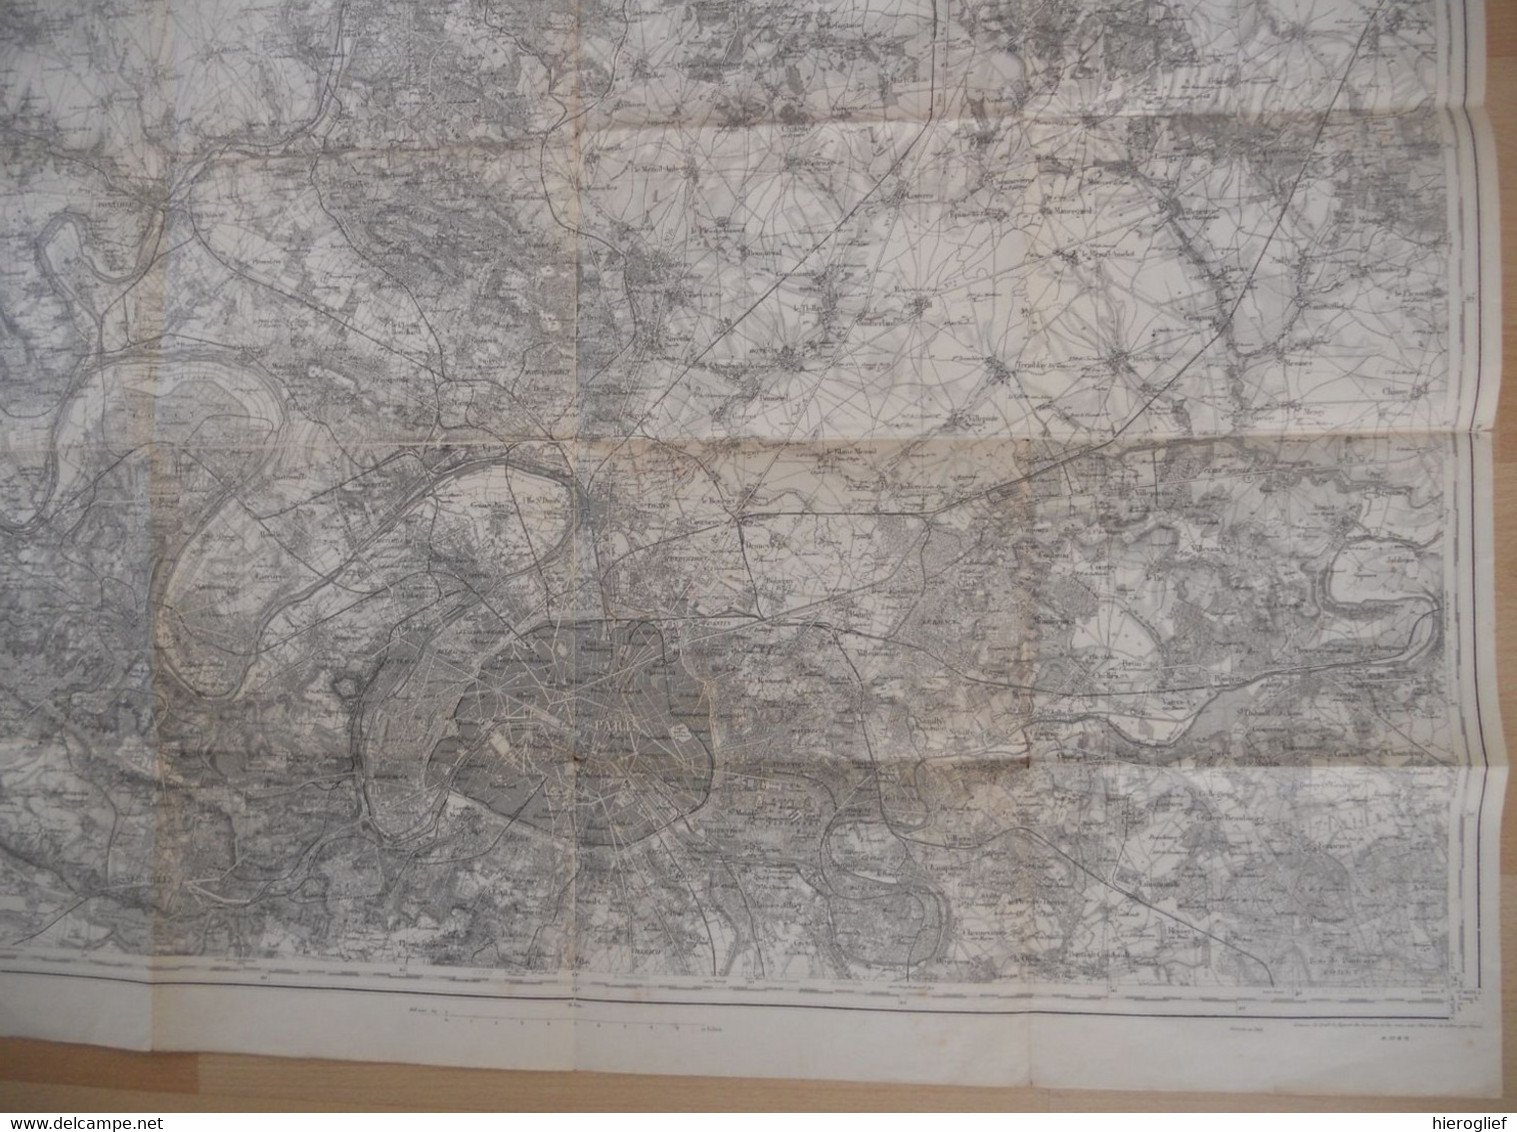 Carte De PARIS (48) Levée Par L'officive Du Corps D'état Major Et Publiée Par Le Dépôt Dl Guerre En 1832 Révisée 1901 - Mapas Topográficas